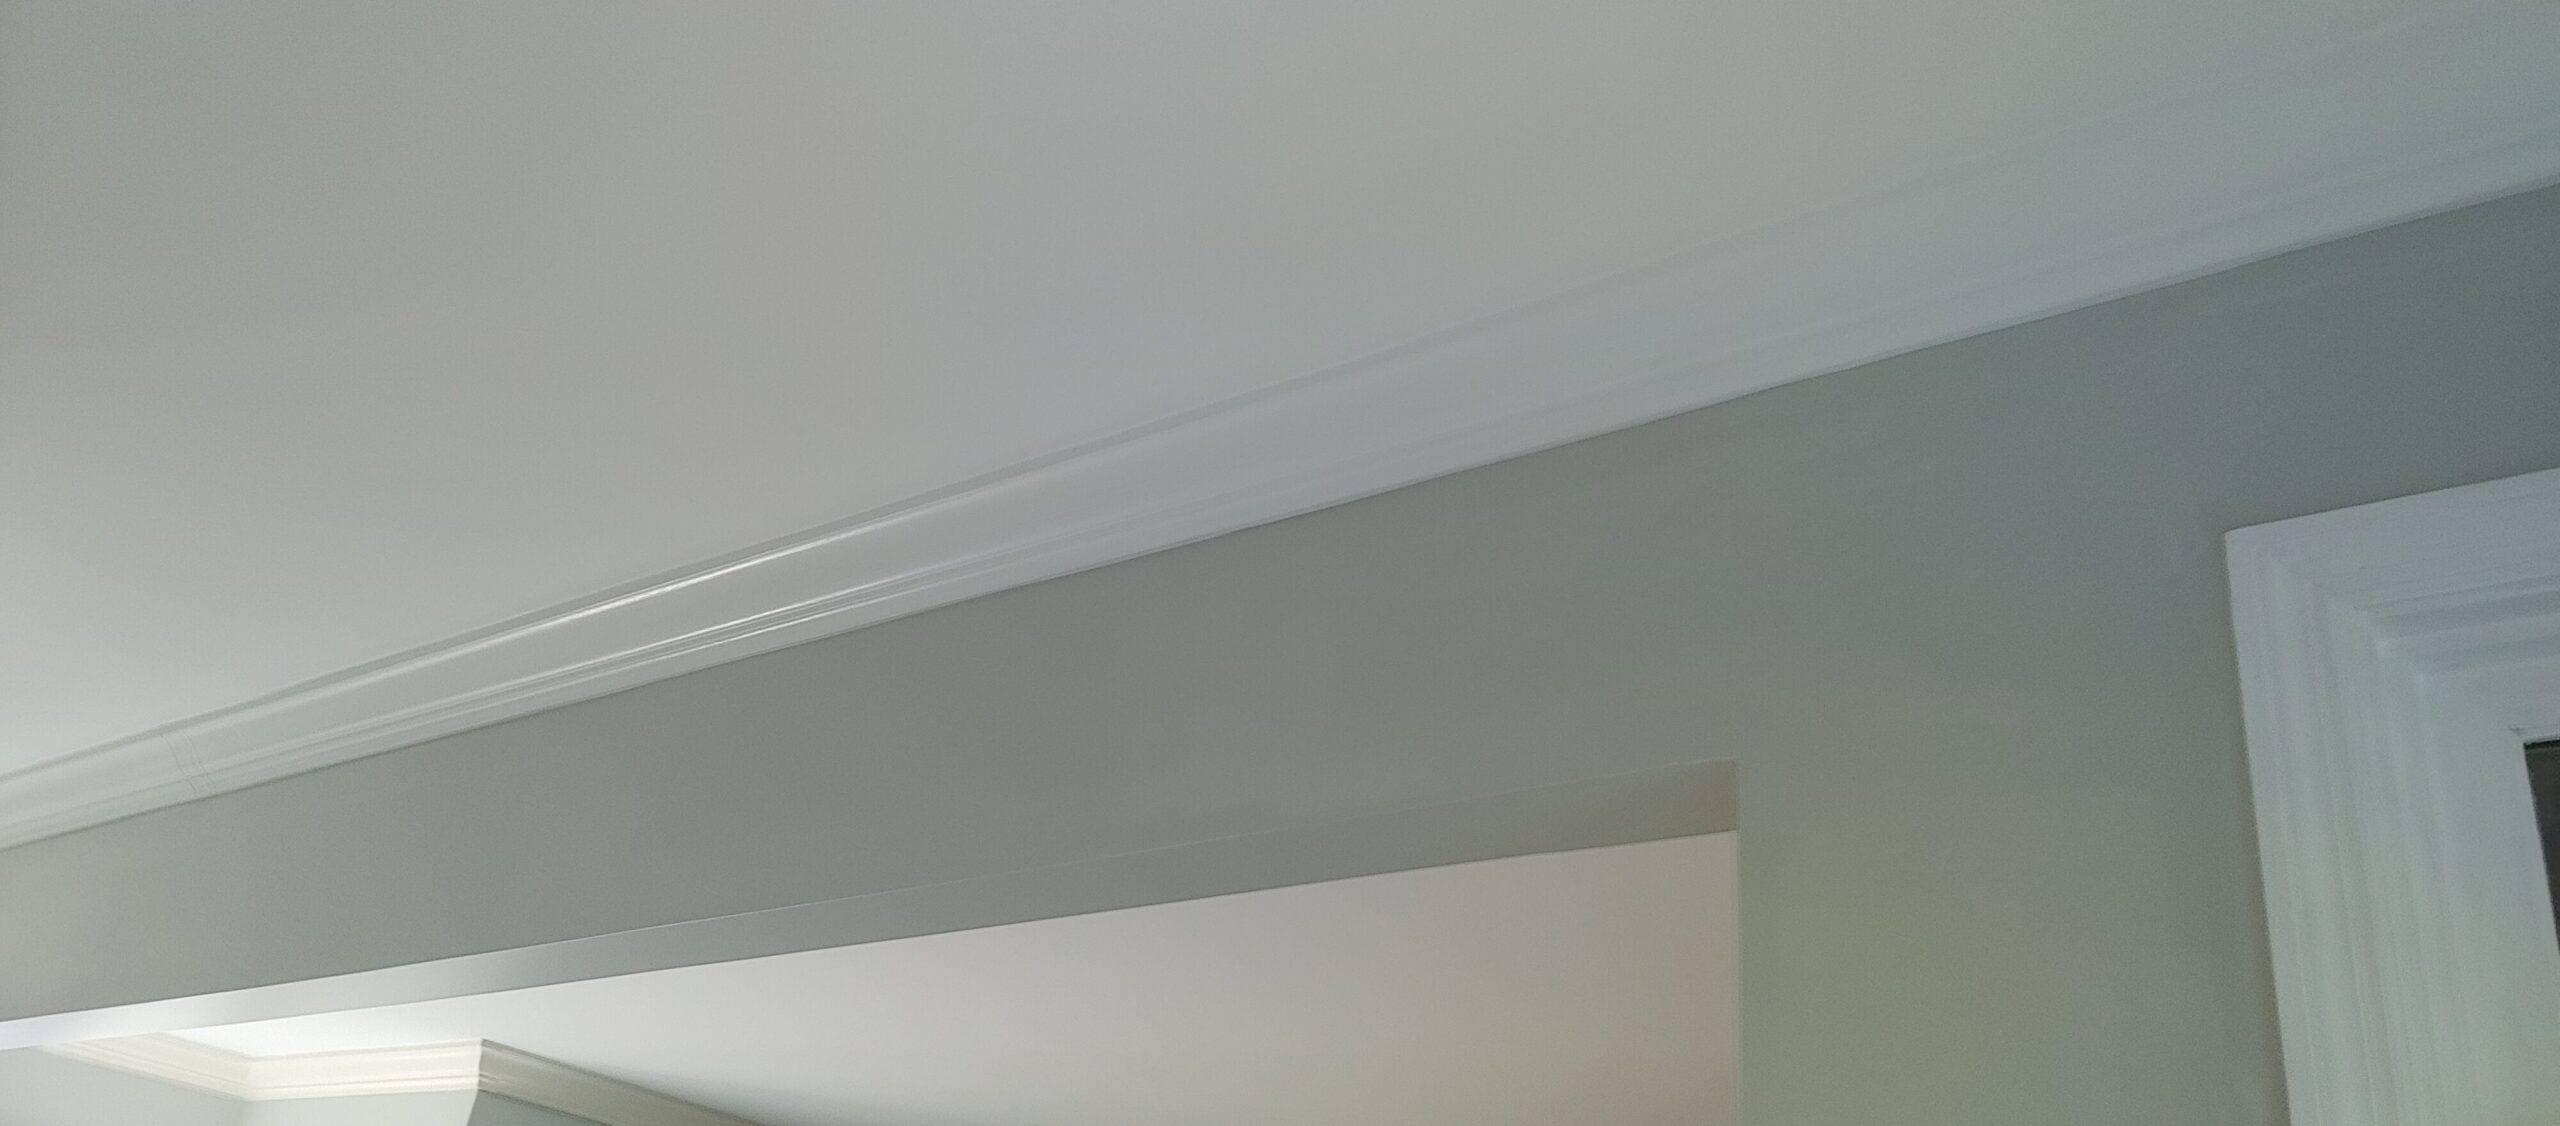 Drywall repair around support beam